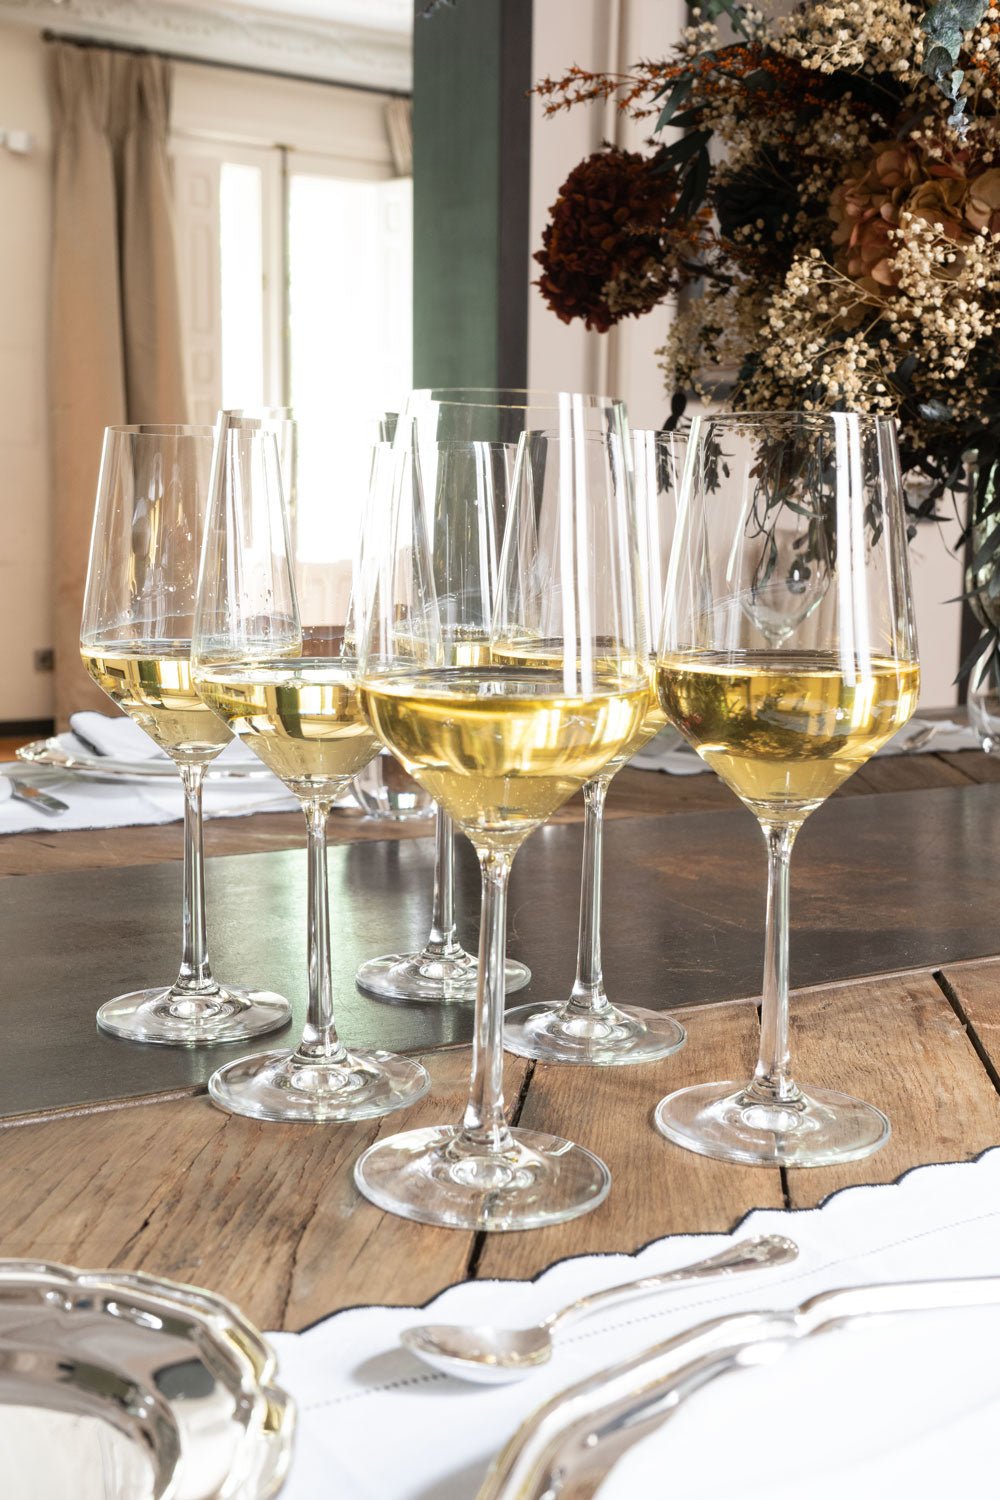 Copas de vino blanco de cristal con relieve Oasis, 6 uds.